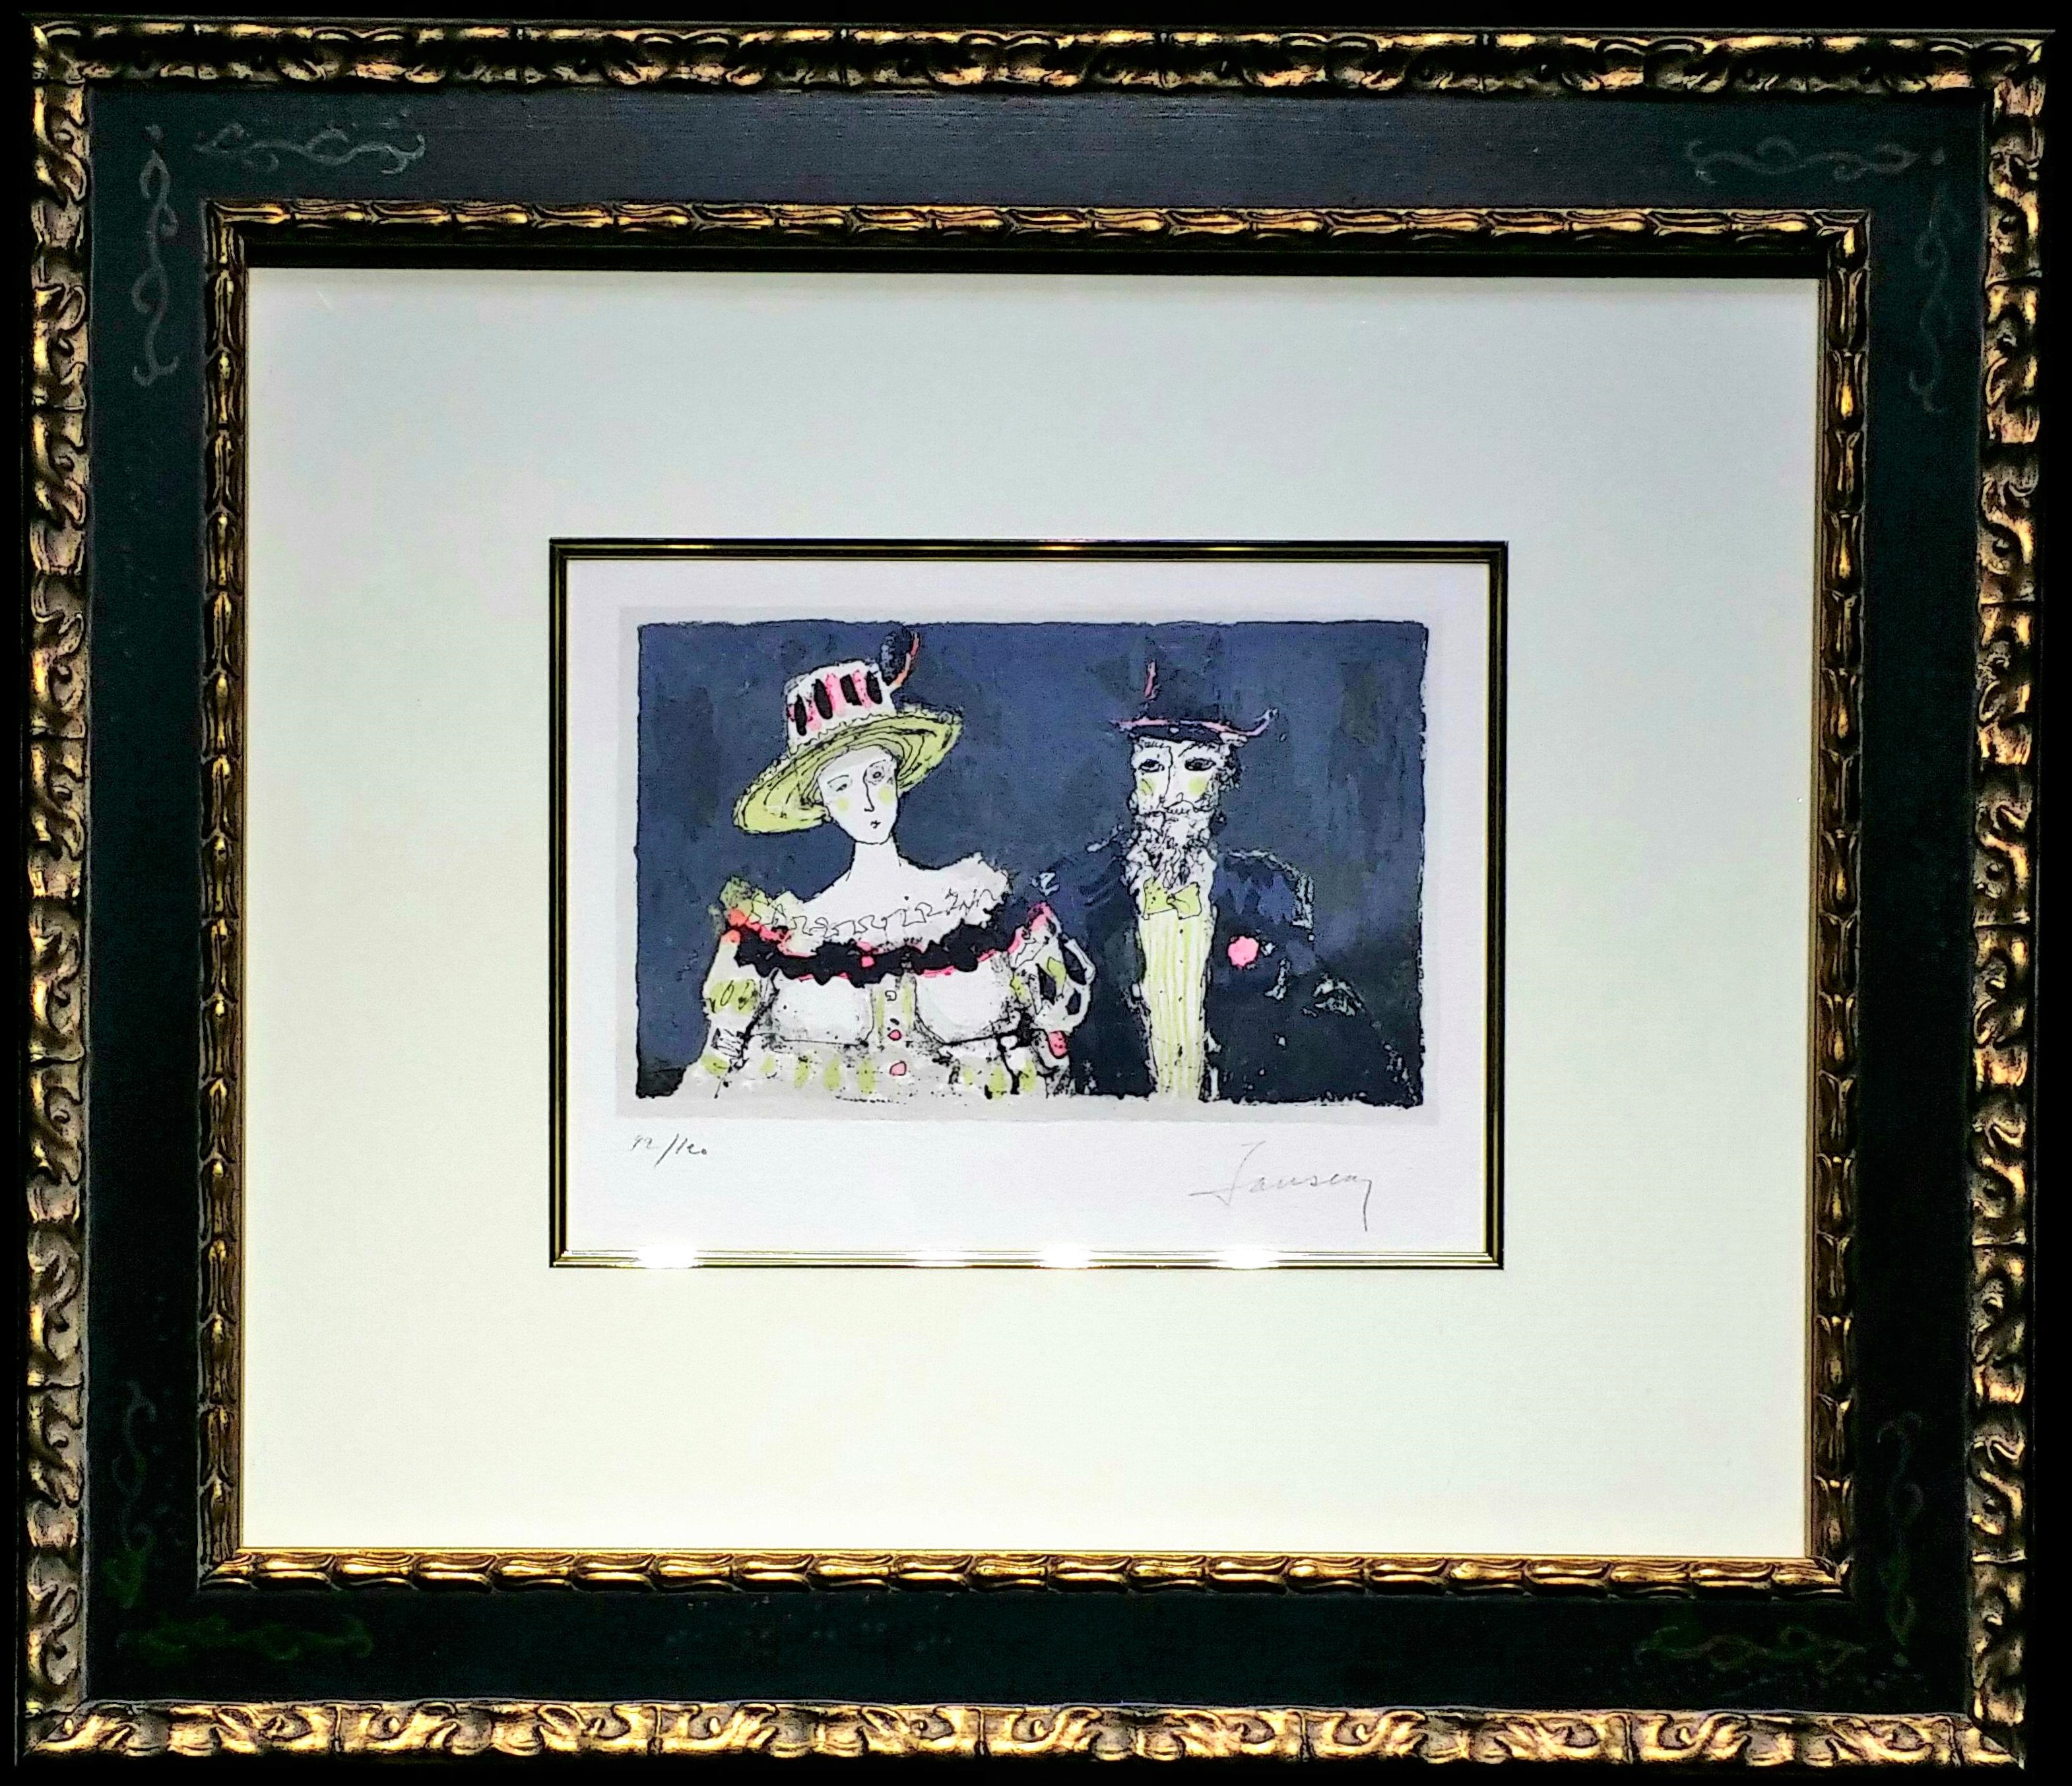 ジャンセン – 桟敷席（リトグラフ 画面 15.7×20.8cm） :: 画廊アートエミュウ - Art EMY／ユトリロ、ジャンセン、フランス美術、プラハ美術、現代アート - 絵画買取